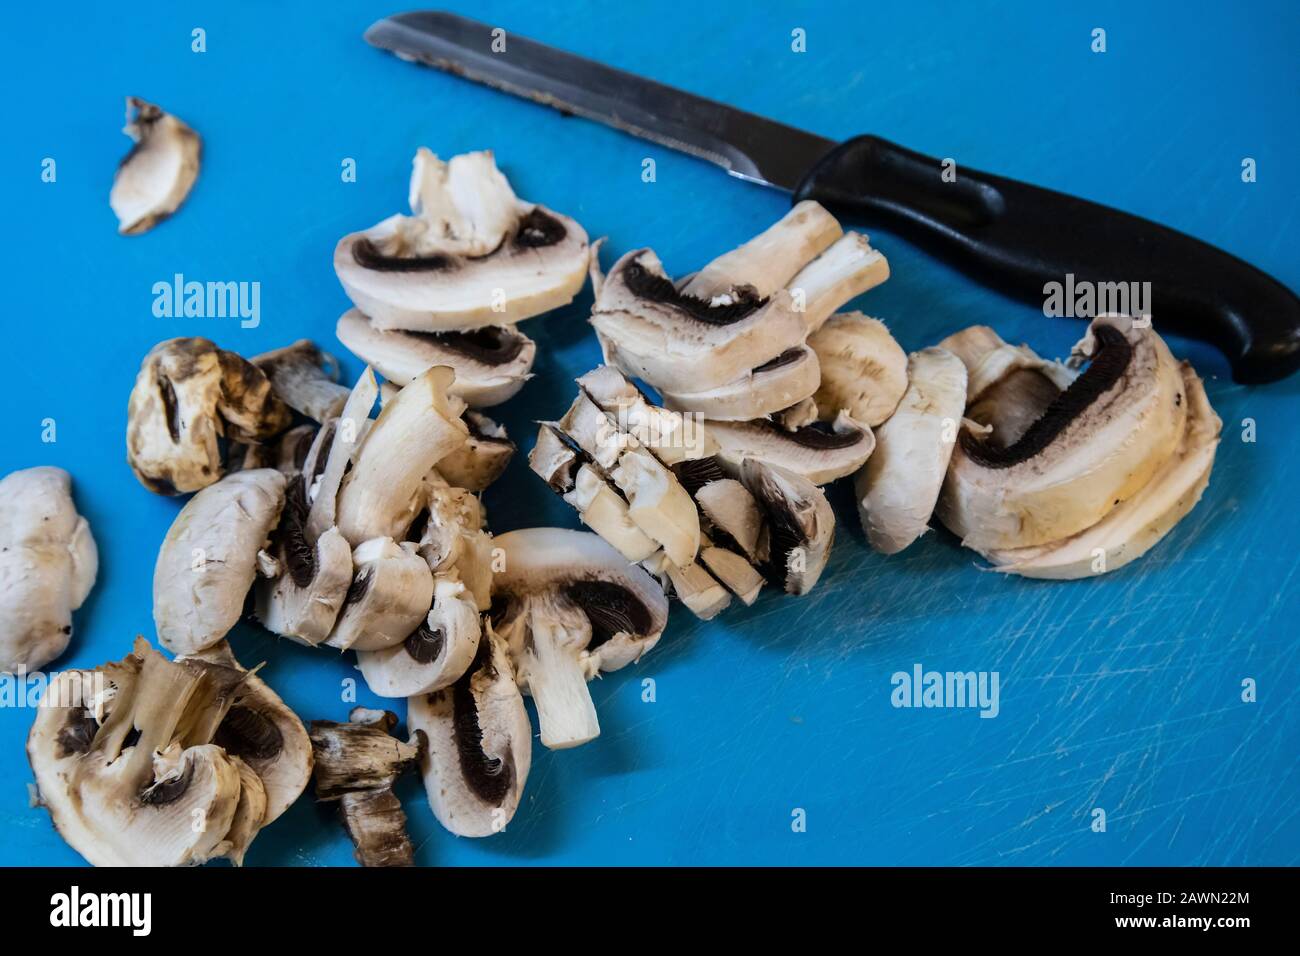 Funghi comuni tritati Agaricus bisporus e un coltello da cucina su un tagliere prima dell'uso per la preparazione degli alimenti. Foto Stock